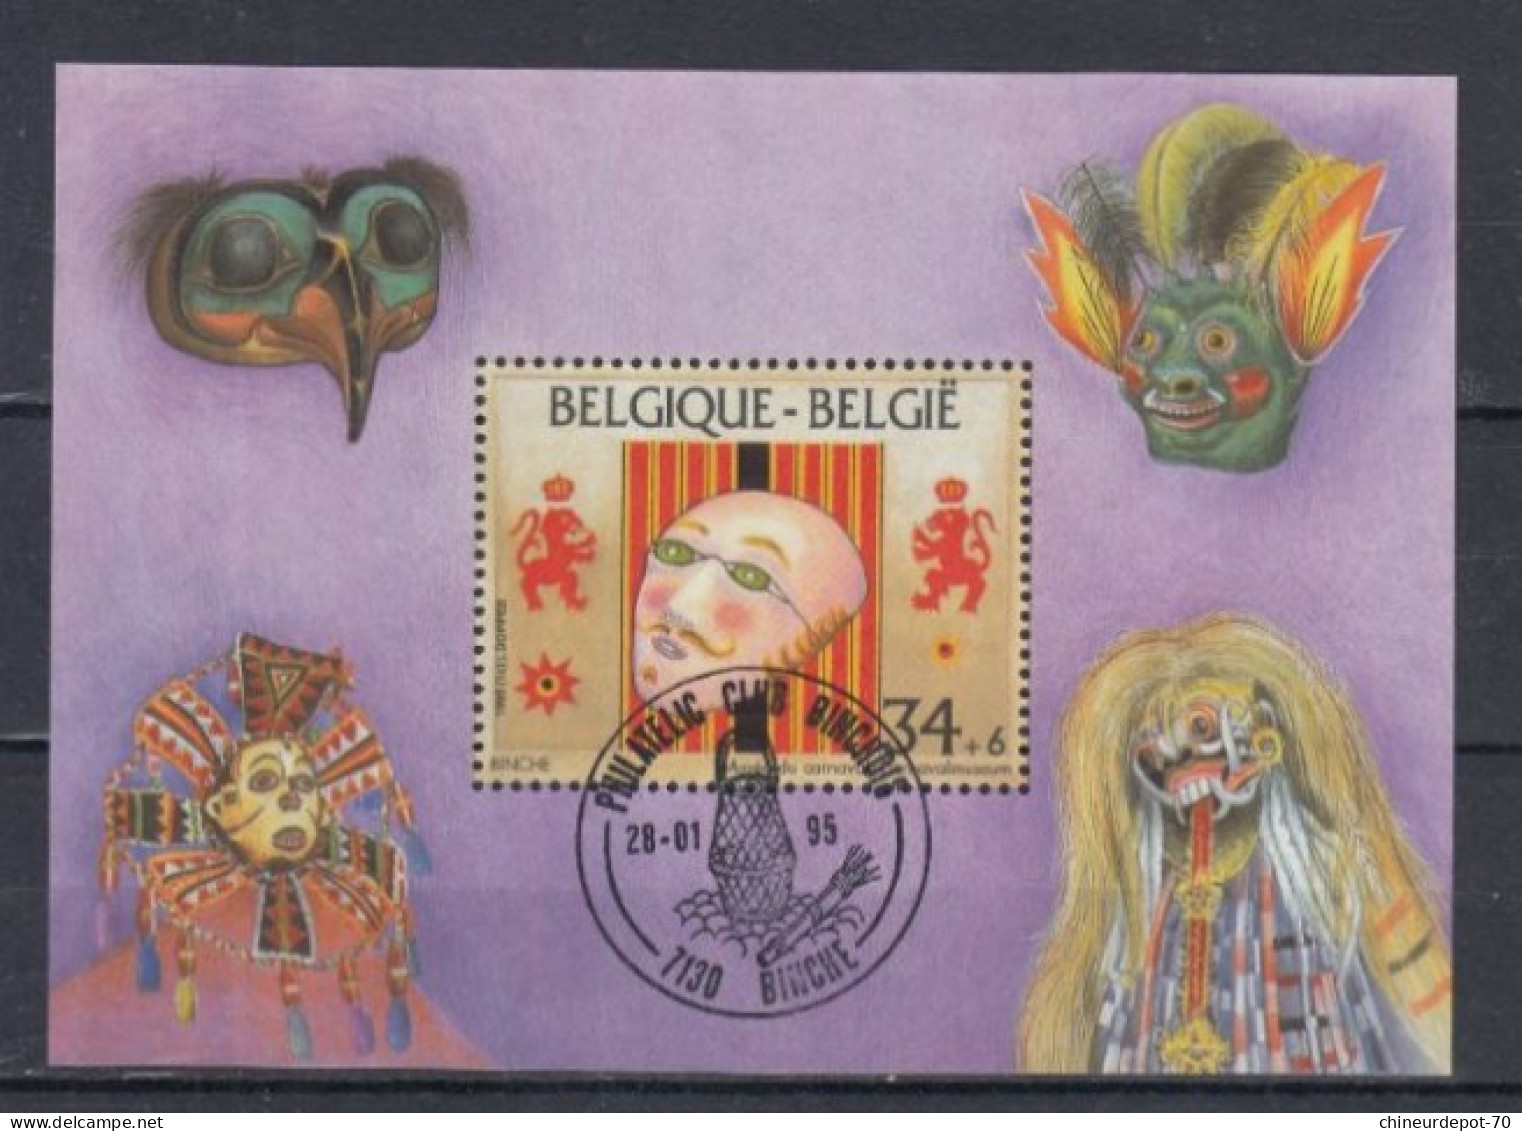 Belge BLOC MASQUE BINCHE 1995 - Oblitérés